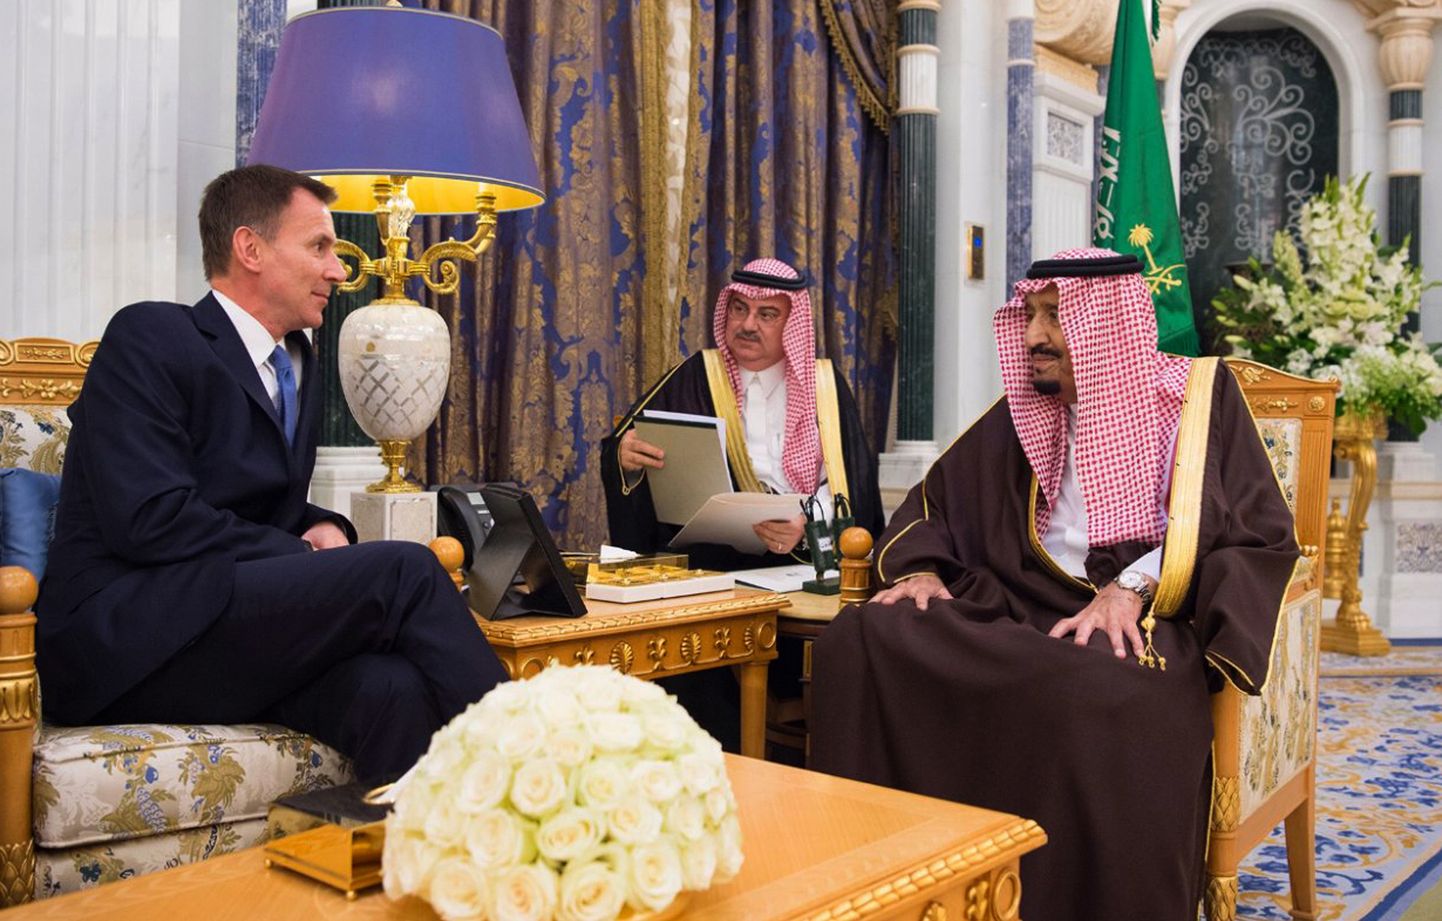 Briti välisminister Jeremy Hunt kohtumisel Saudi kuningas Salmaniga.